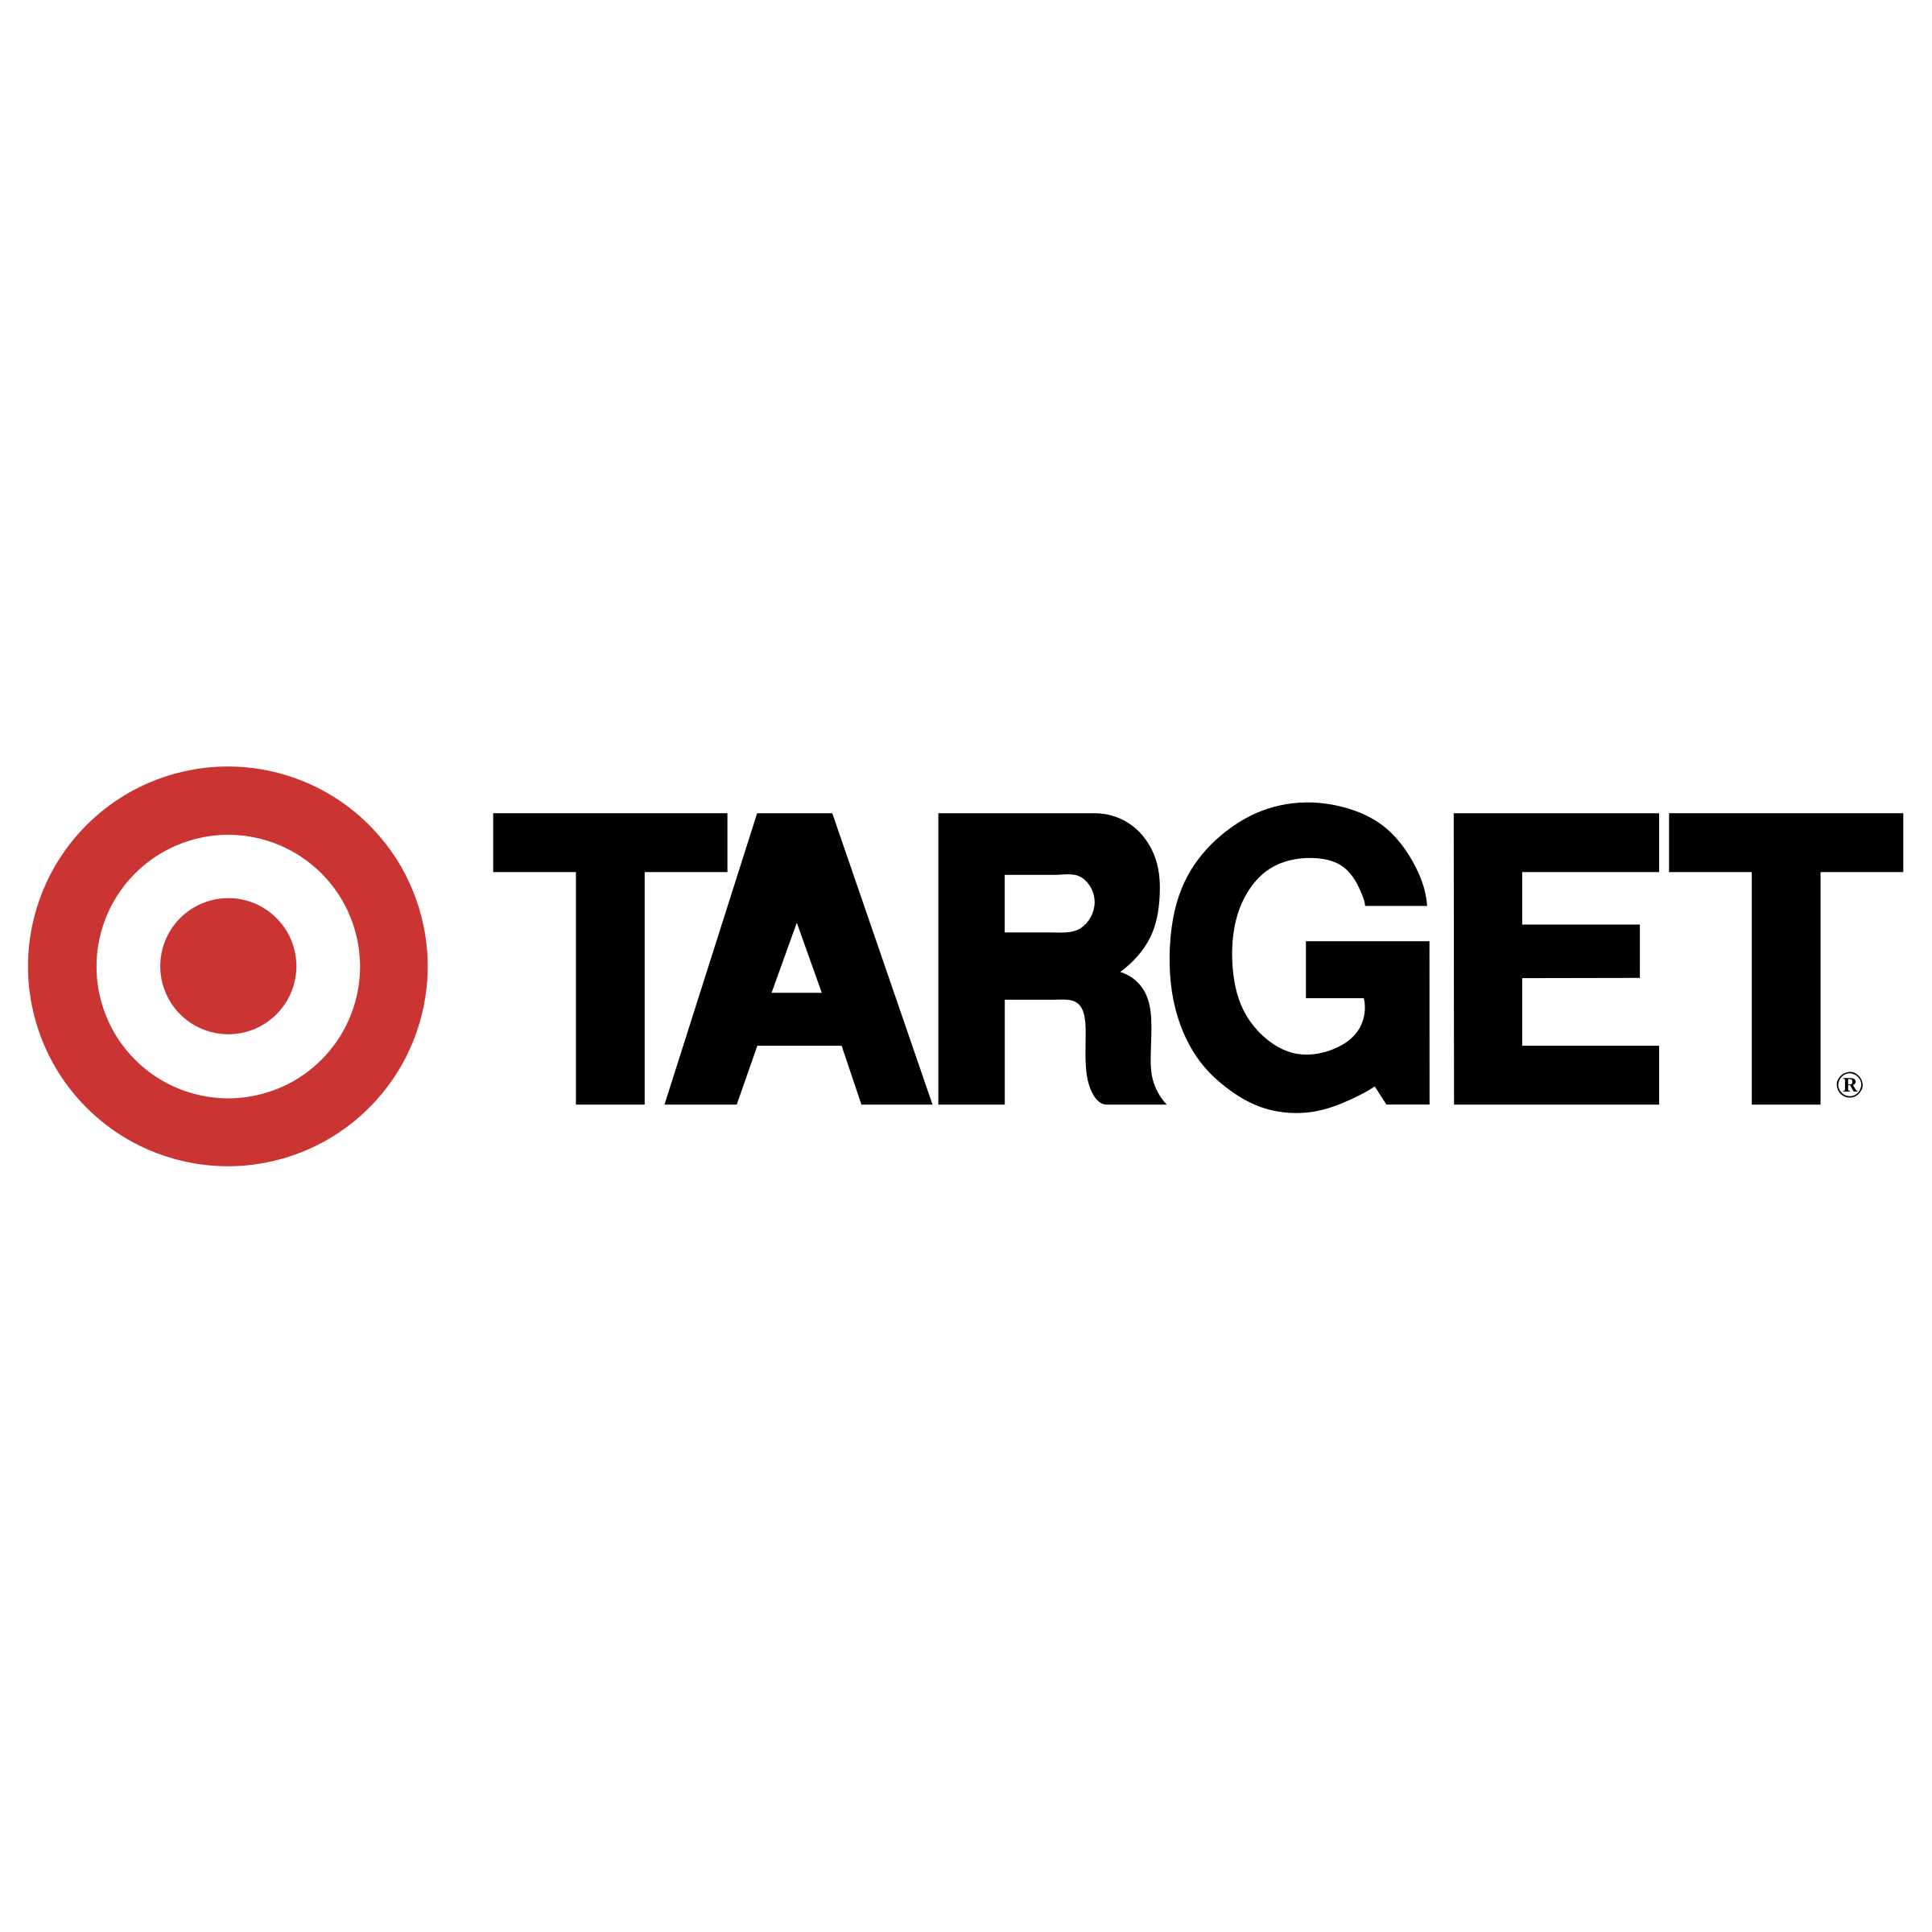 target-7-logo-png-transparent